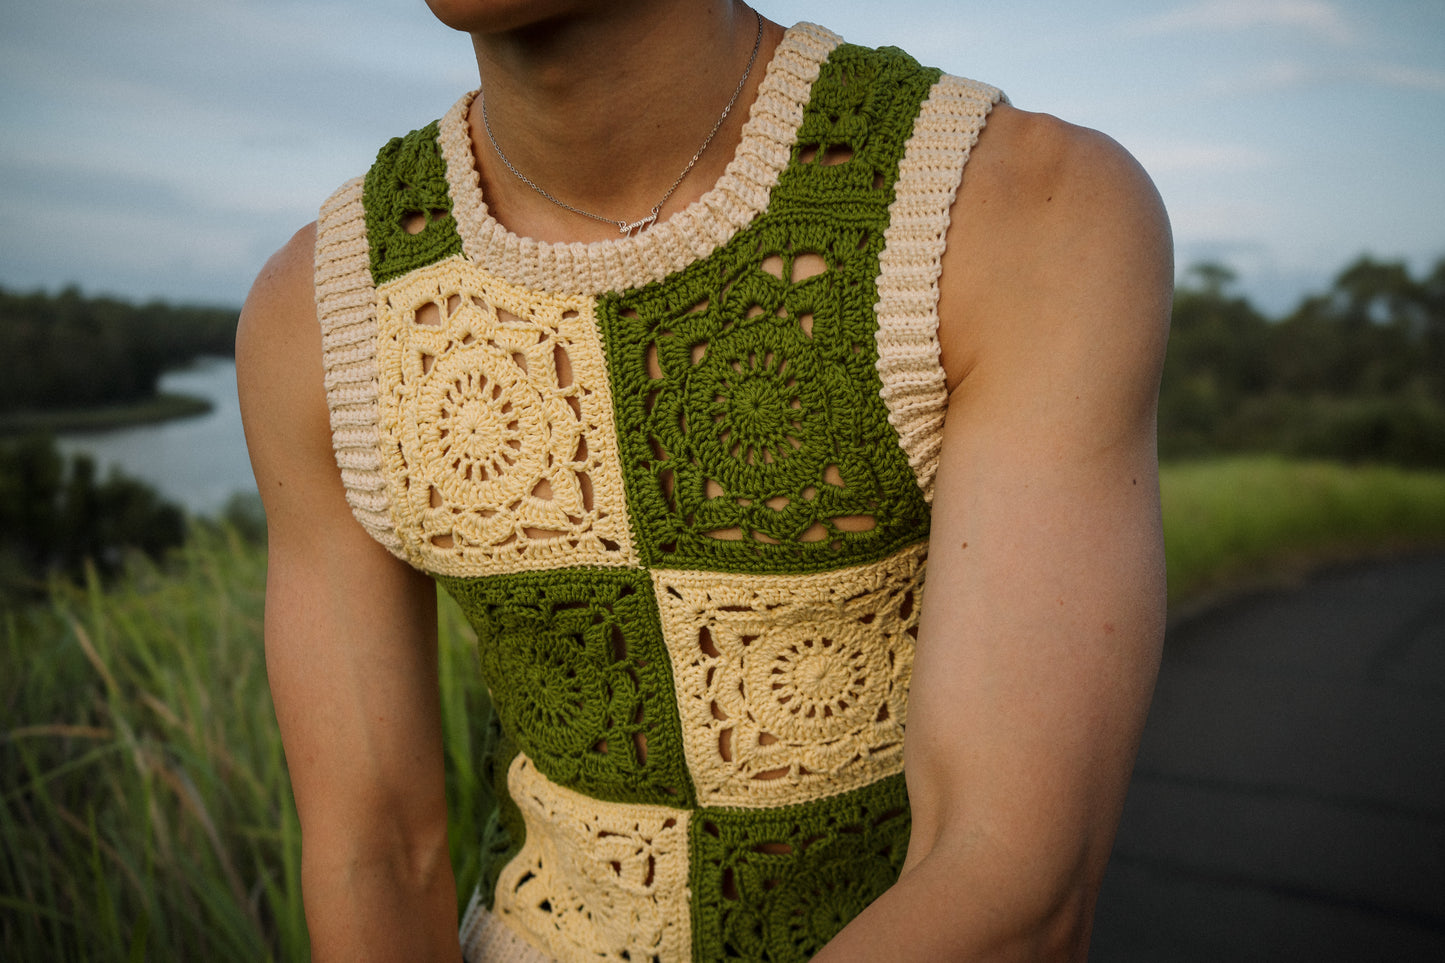 REVERIE Crochet Vest [PATTERN]